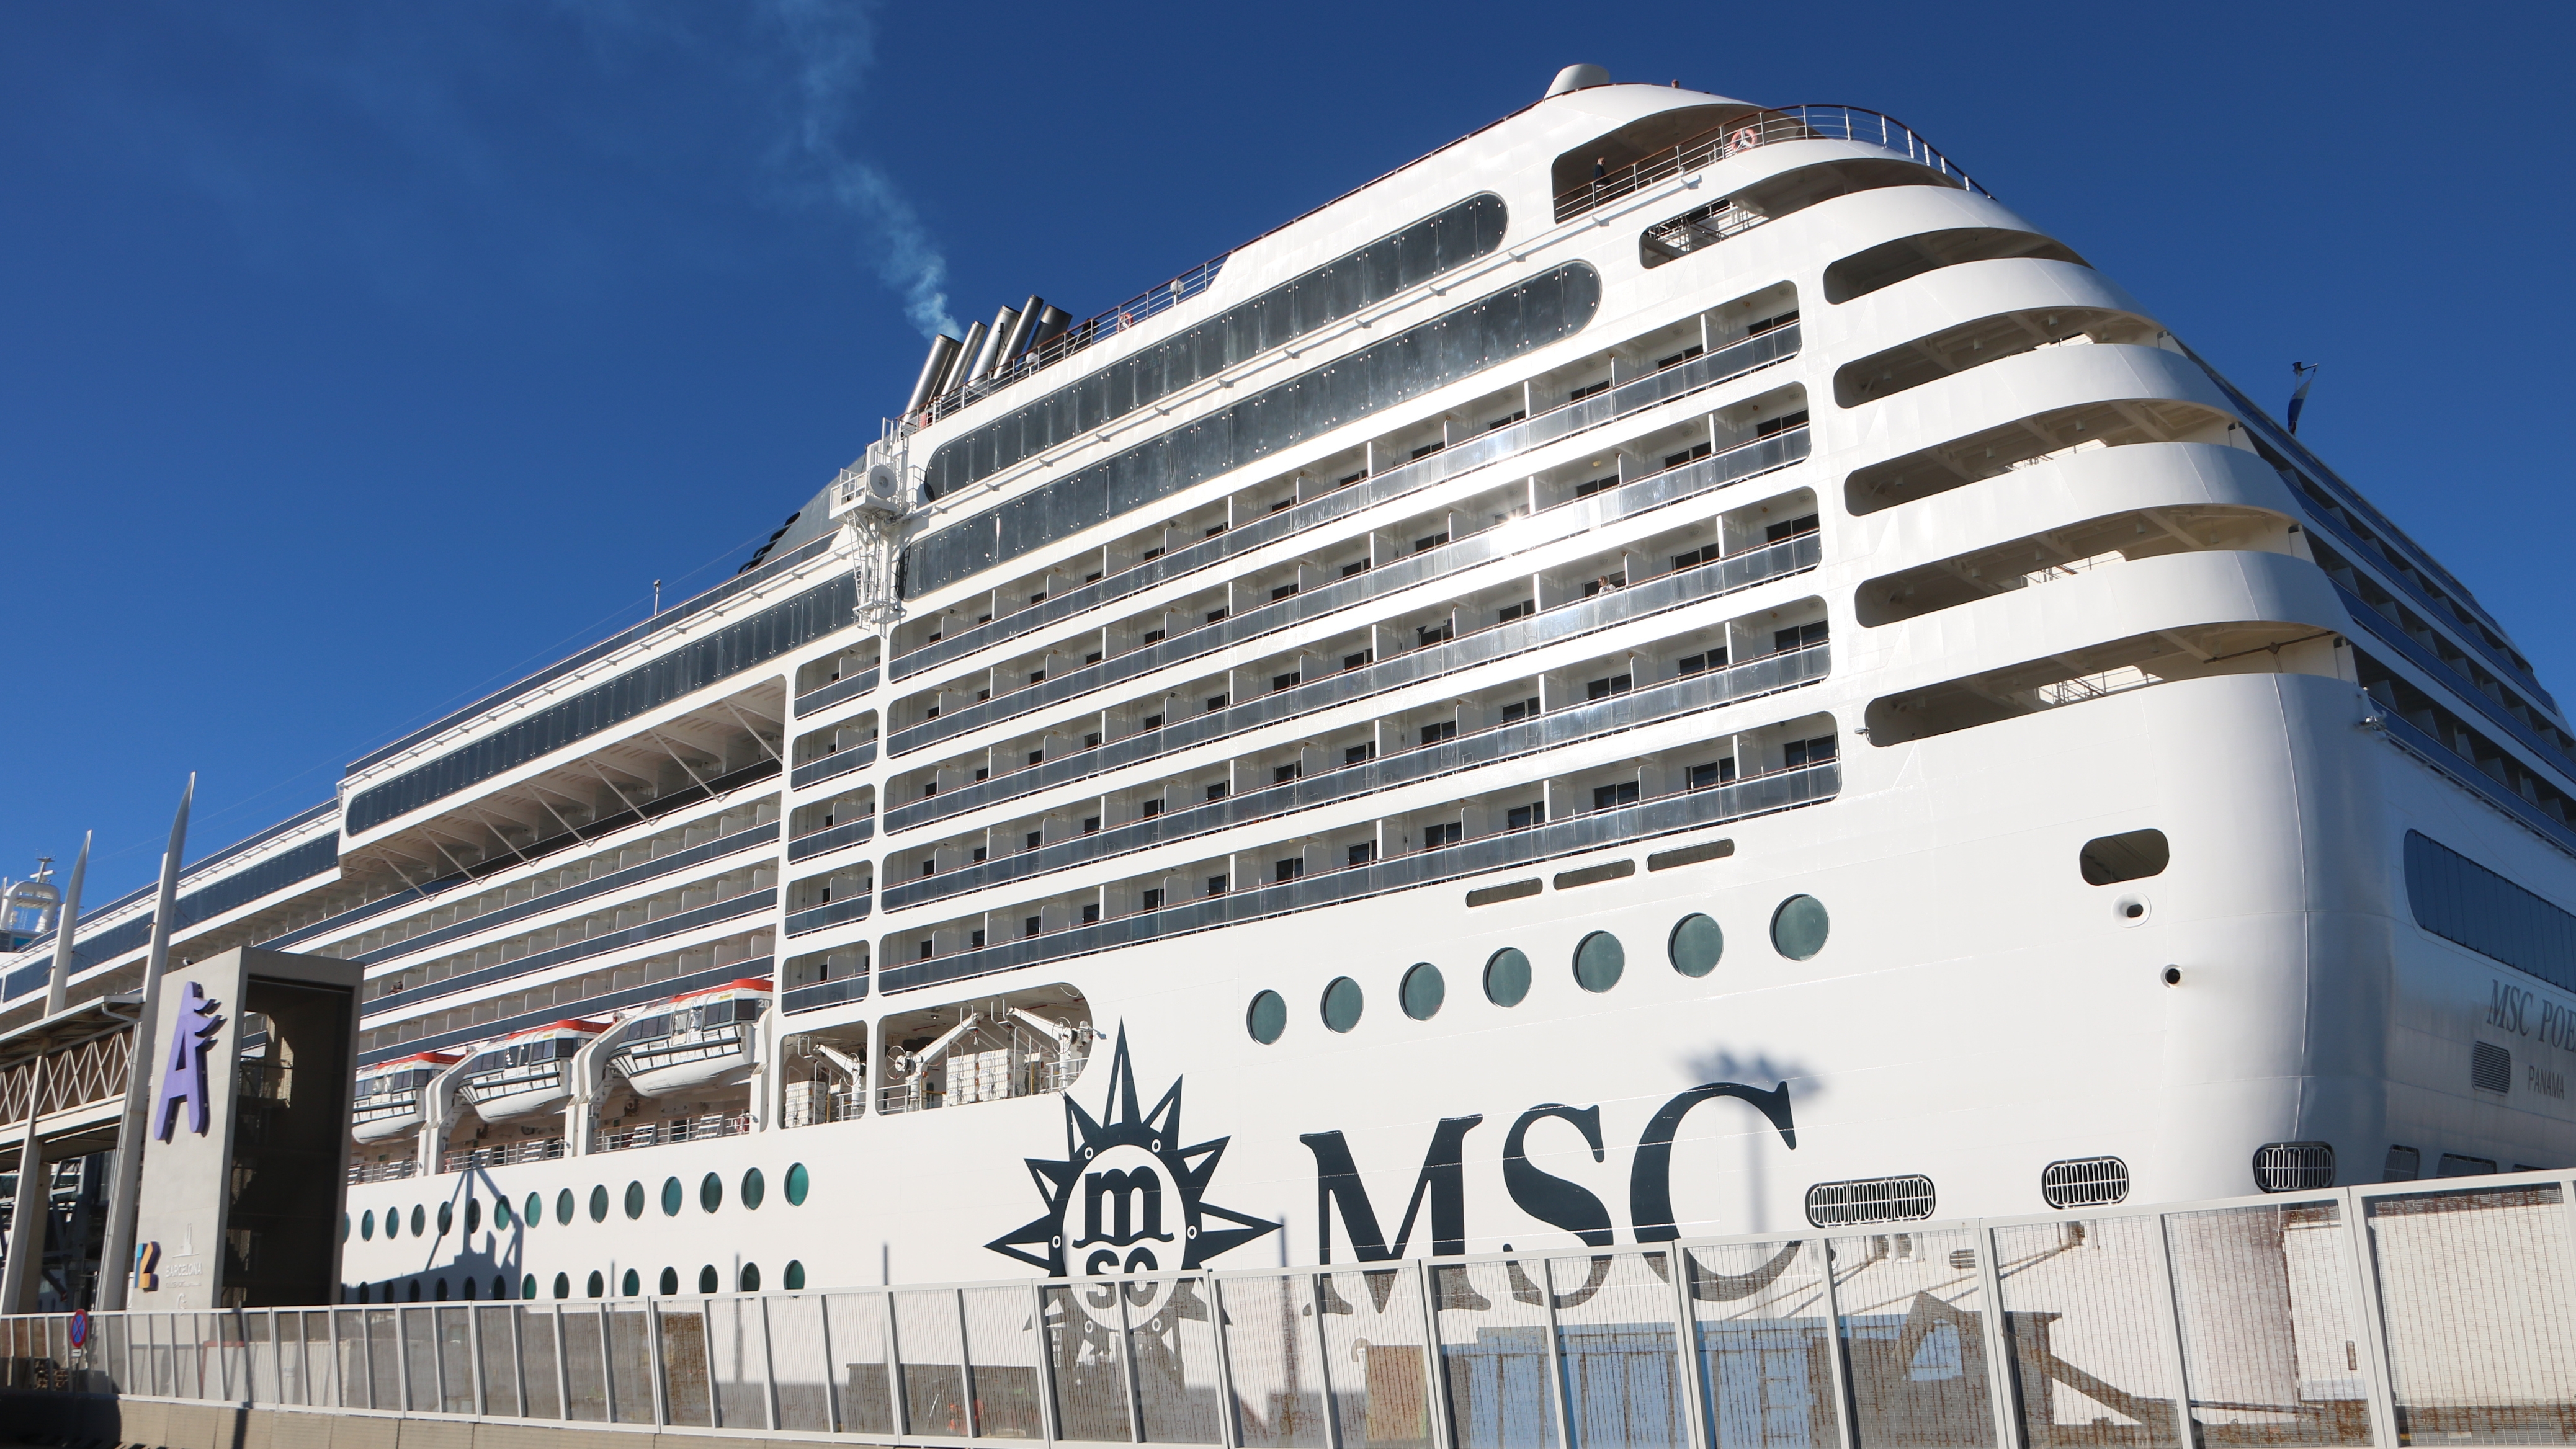 Retenido un crucero MSC en Barcelona al descubrirse falsedad en los visados de los pasajeros